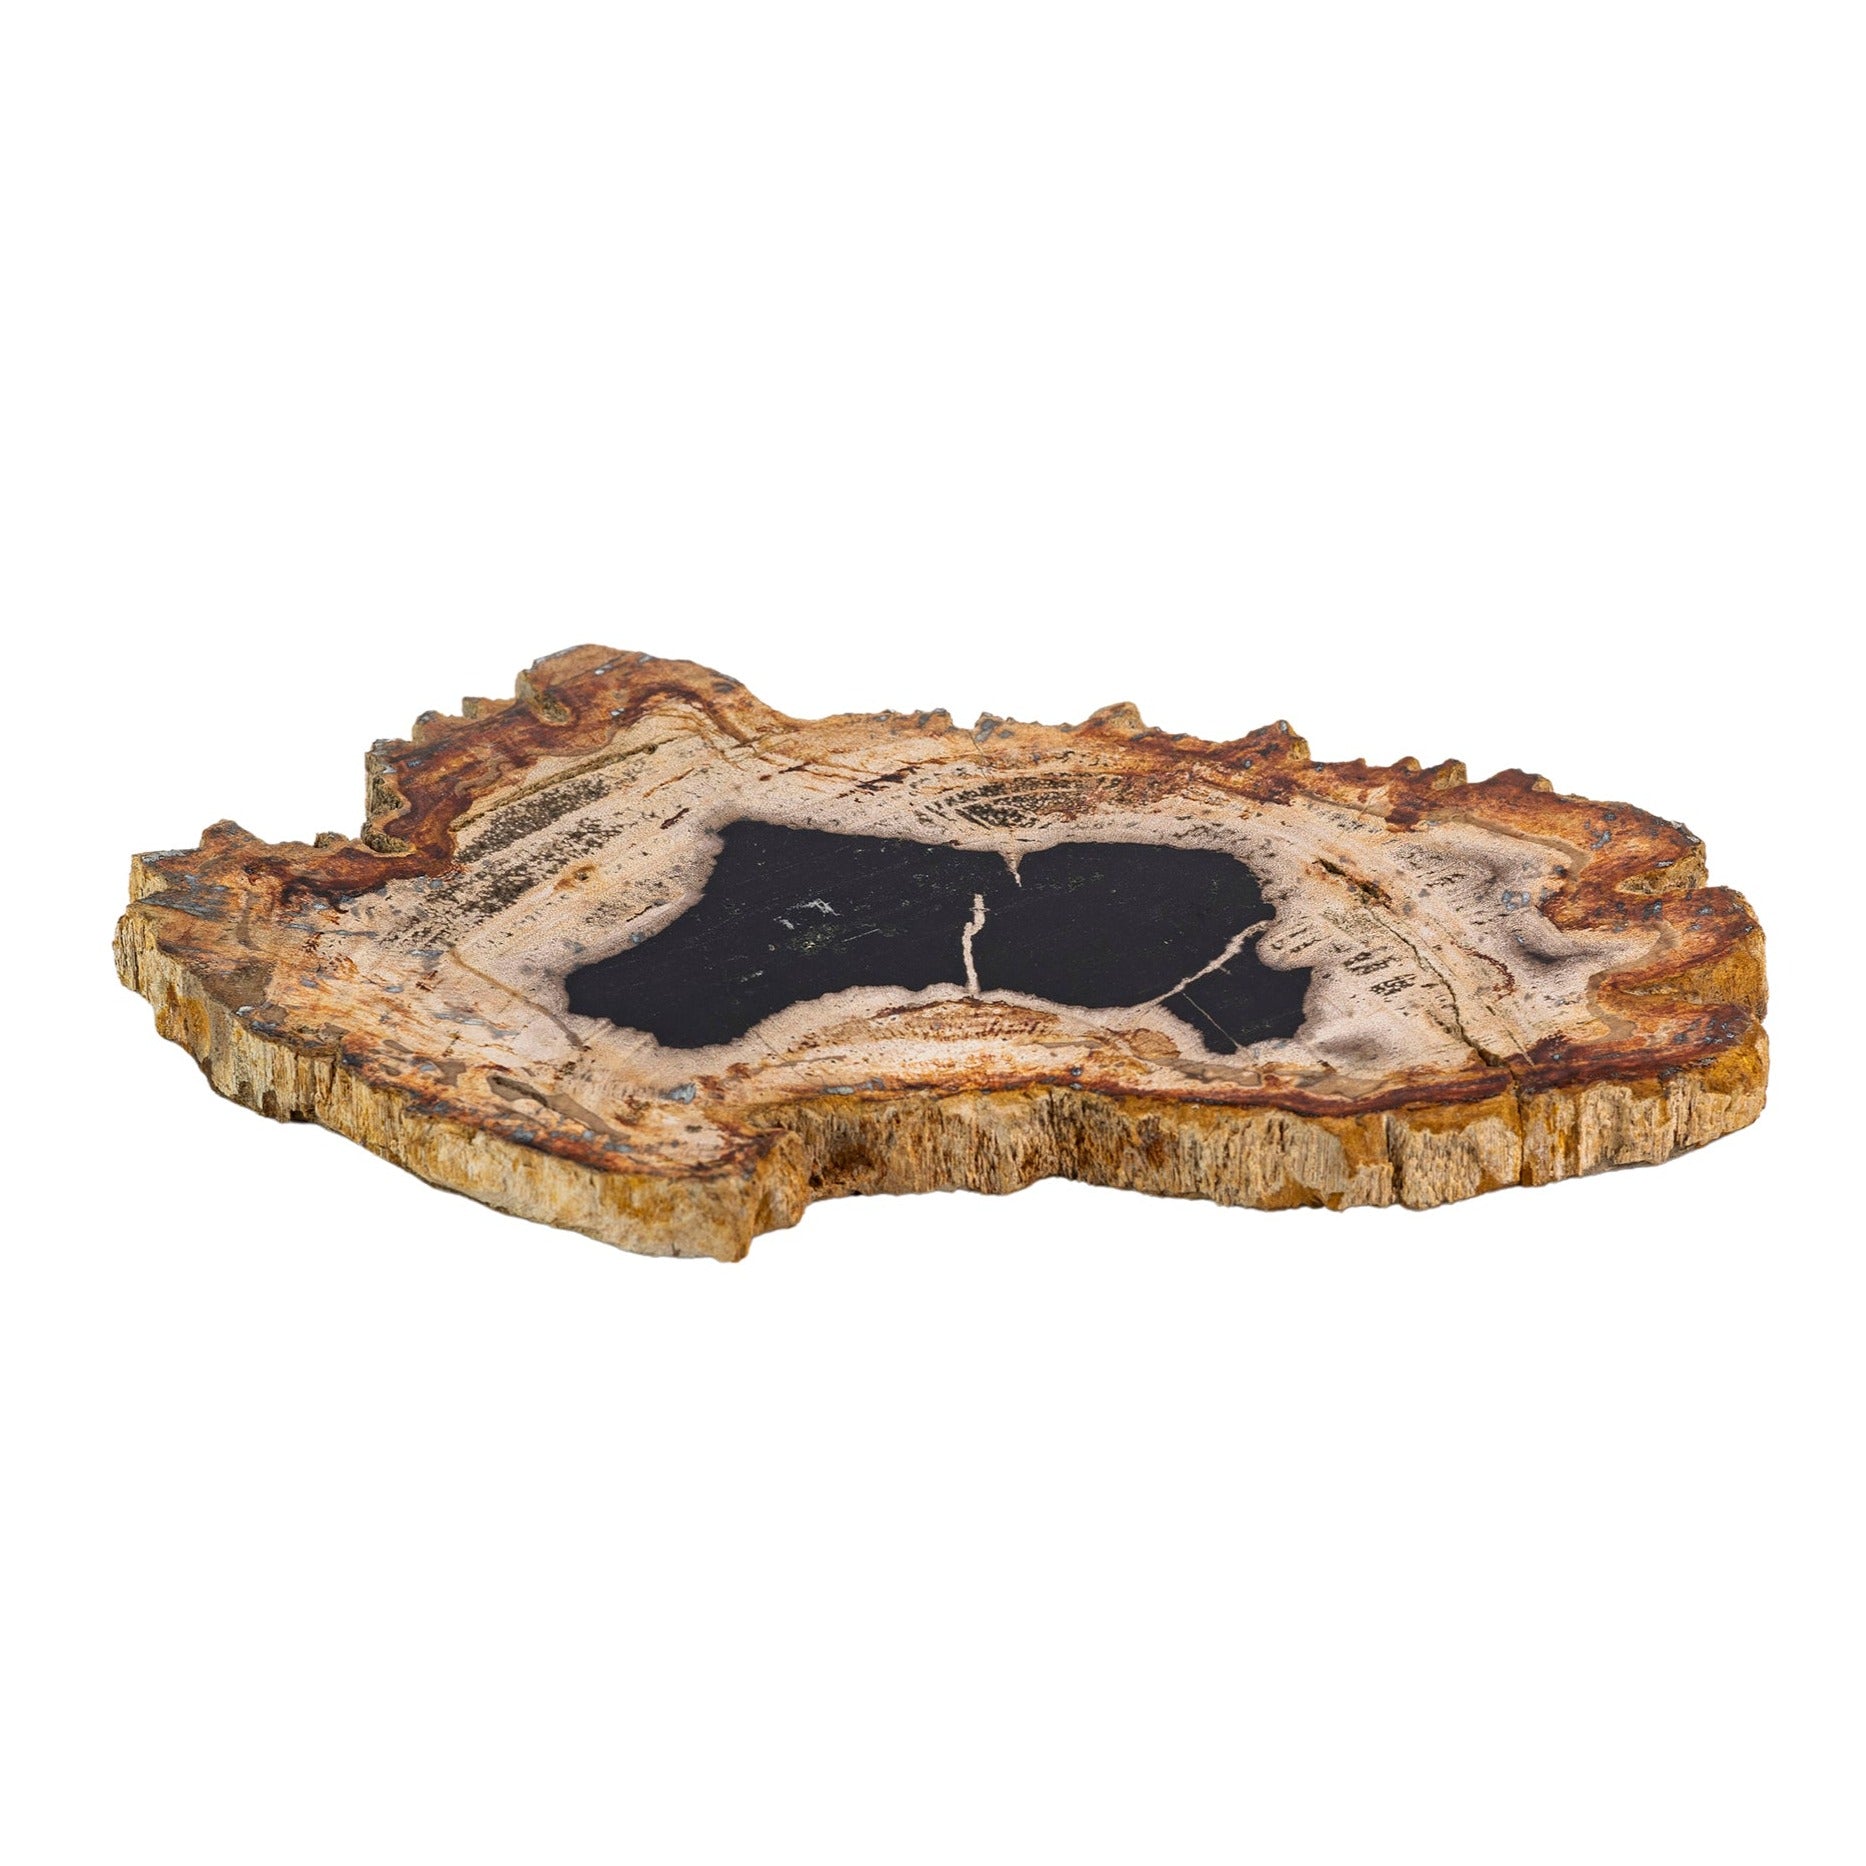 Petrified Wood Polished Slice Fossil